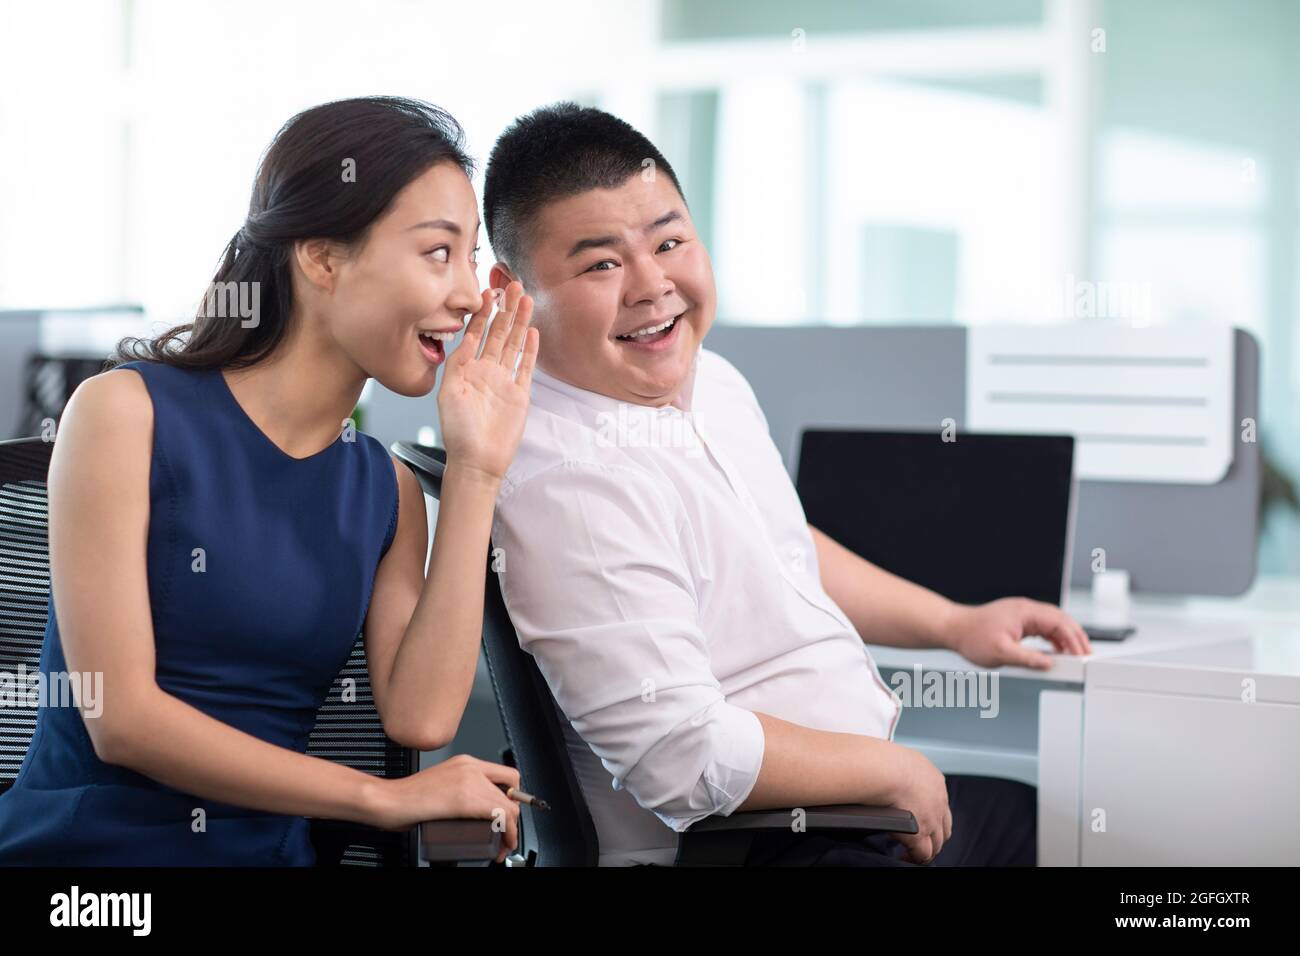 Business people talking gossip in office Stock Photo